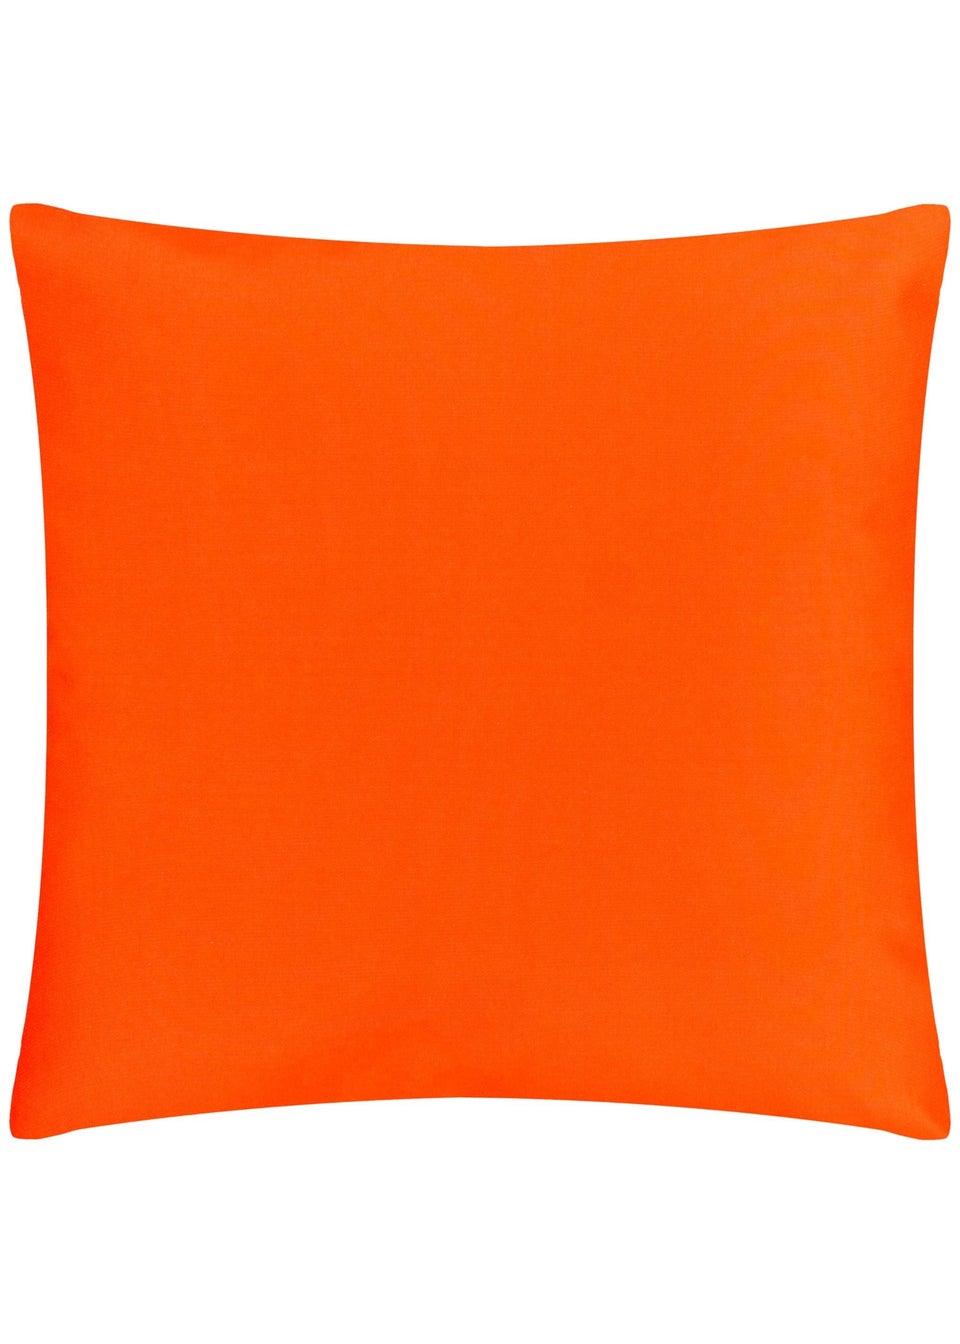 furn. Coral Marula Filled Outdoor Cushions (43cm x 43cm x 8cm)